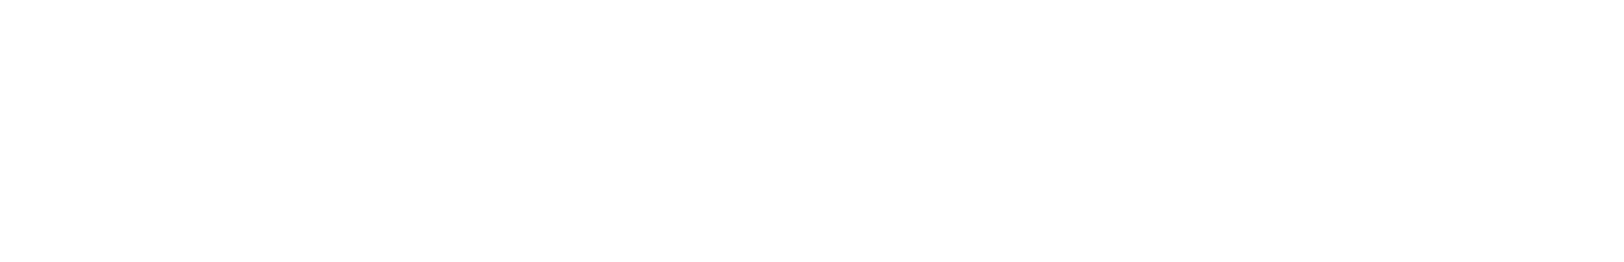 LVMH logo large for dark backgrounds (transparent PNG)